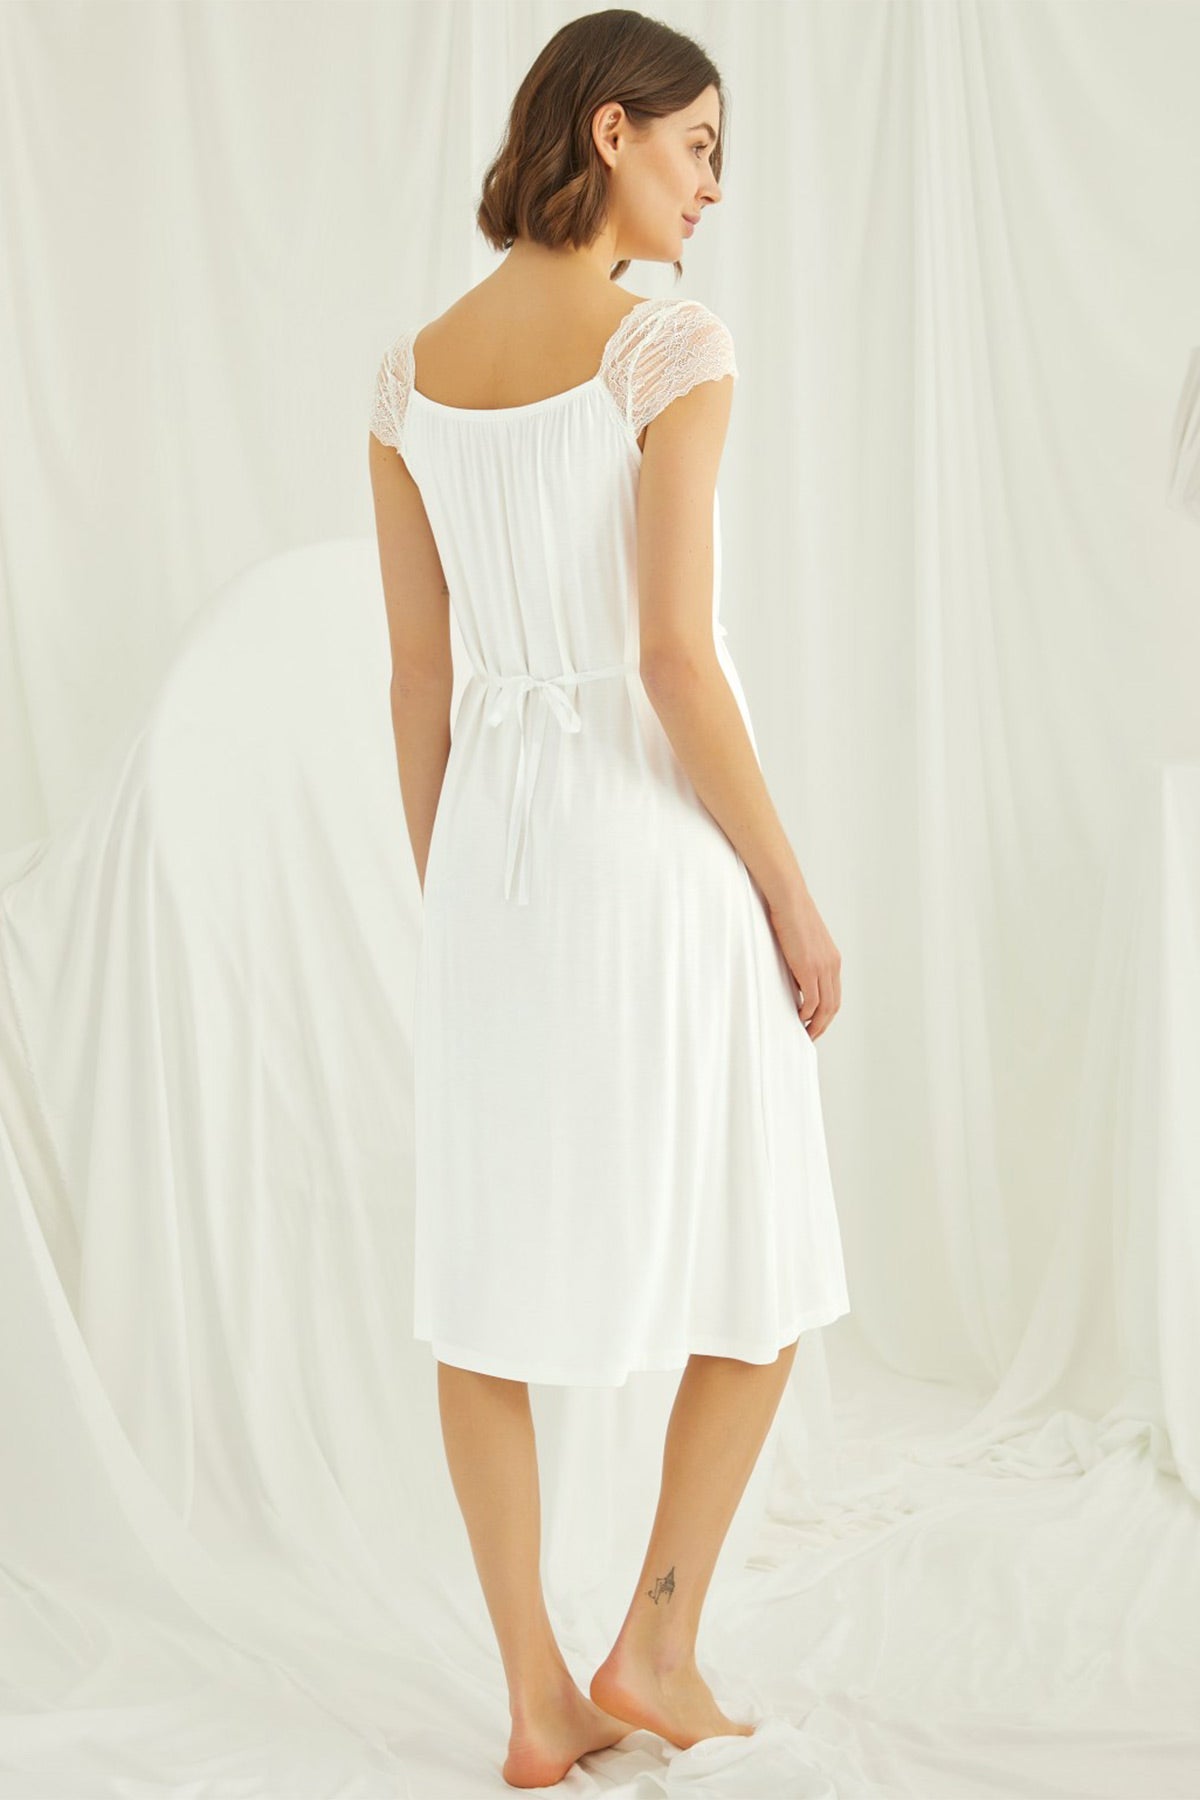 Shopymommy 18300 Lace Maternity & Nursing Nightgown Ecru